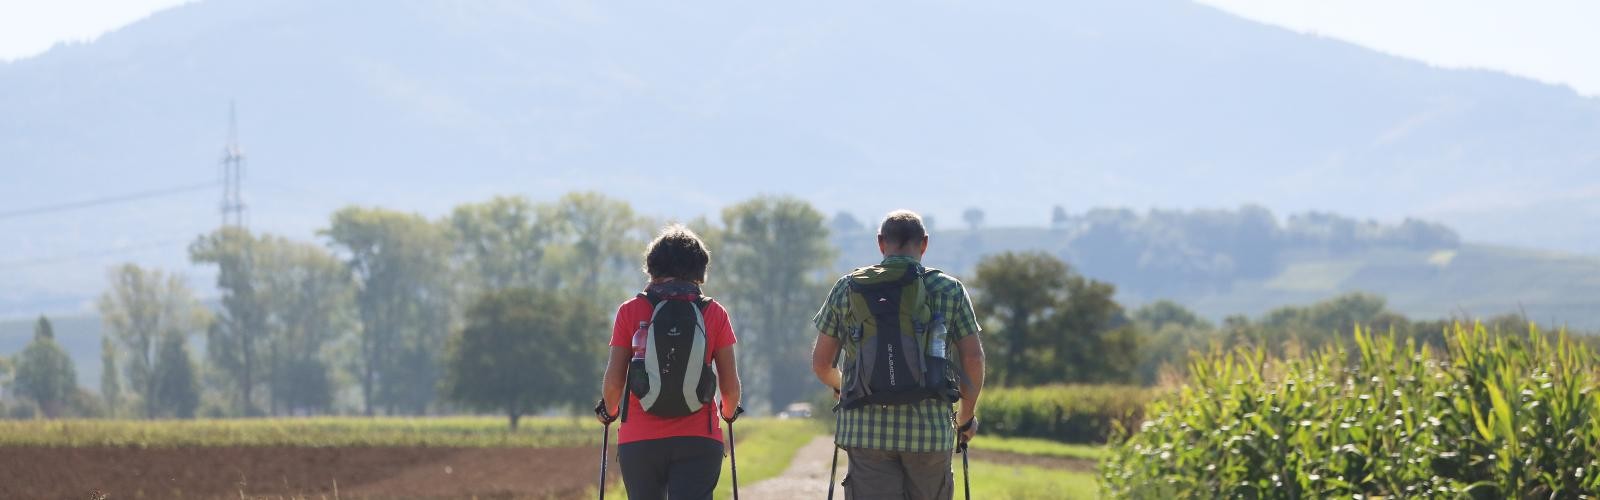 Zwei Wanderer auf einem Schotterweg mit Hügeln im Hintergrund